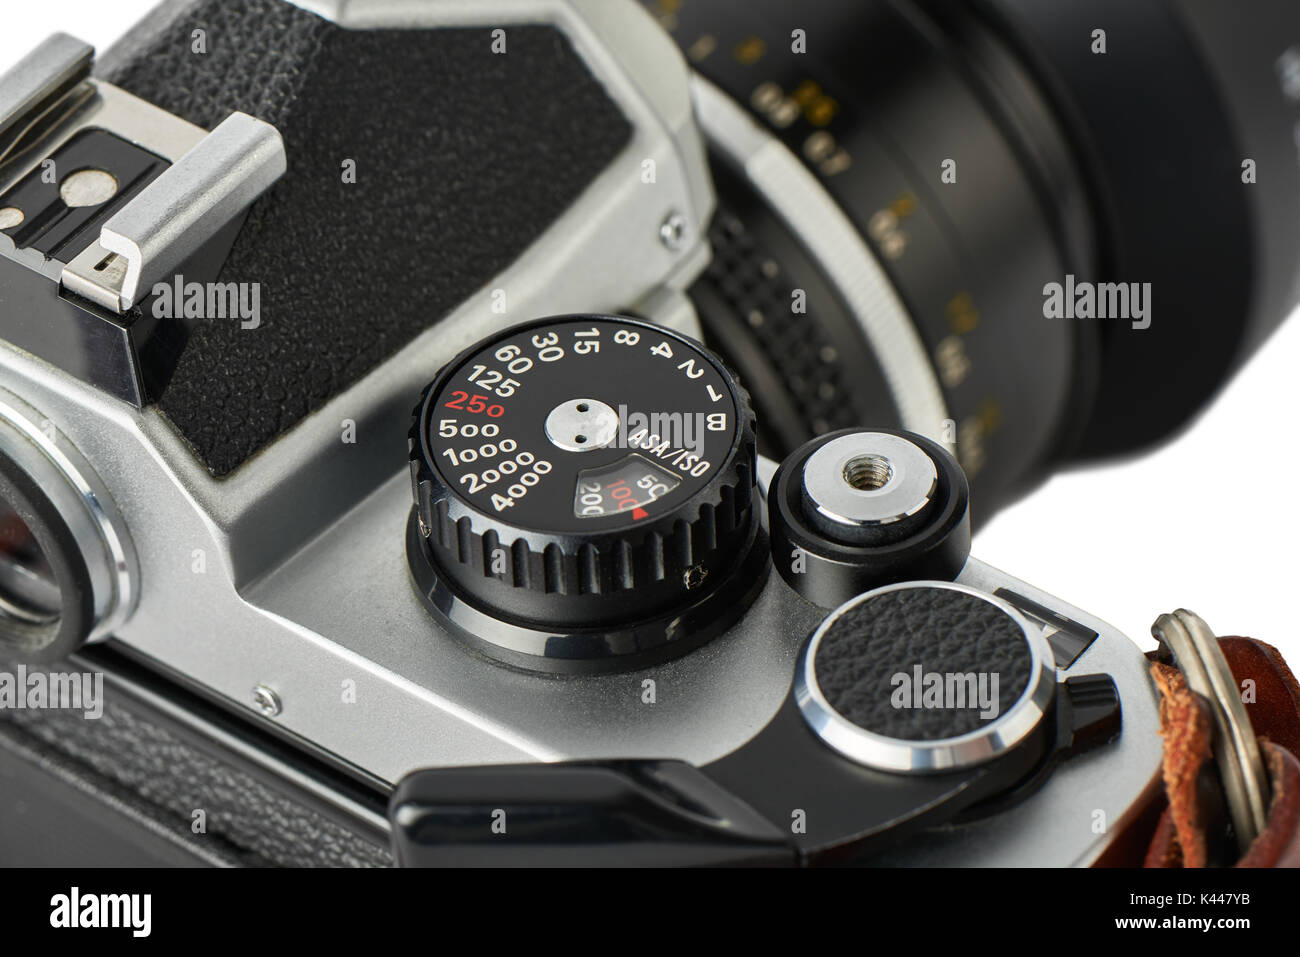 Libre de la vitesse d'obturation et la sensibilité ISO (film) sur un appareil photo classique. Banque D'Images